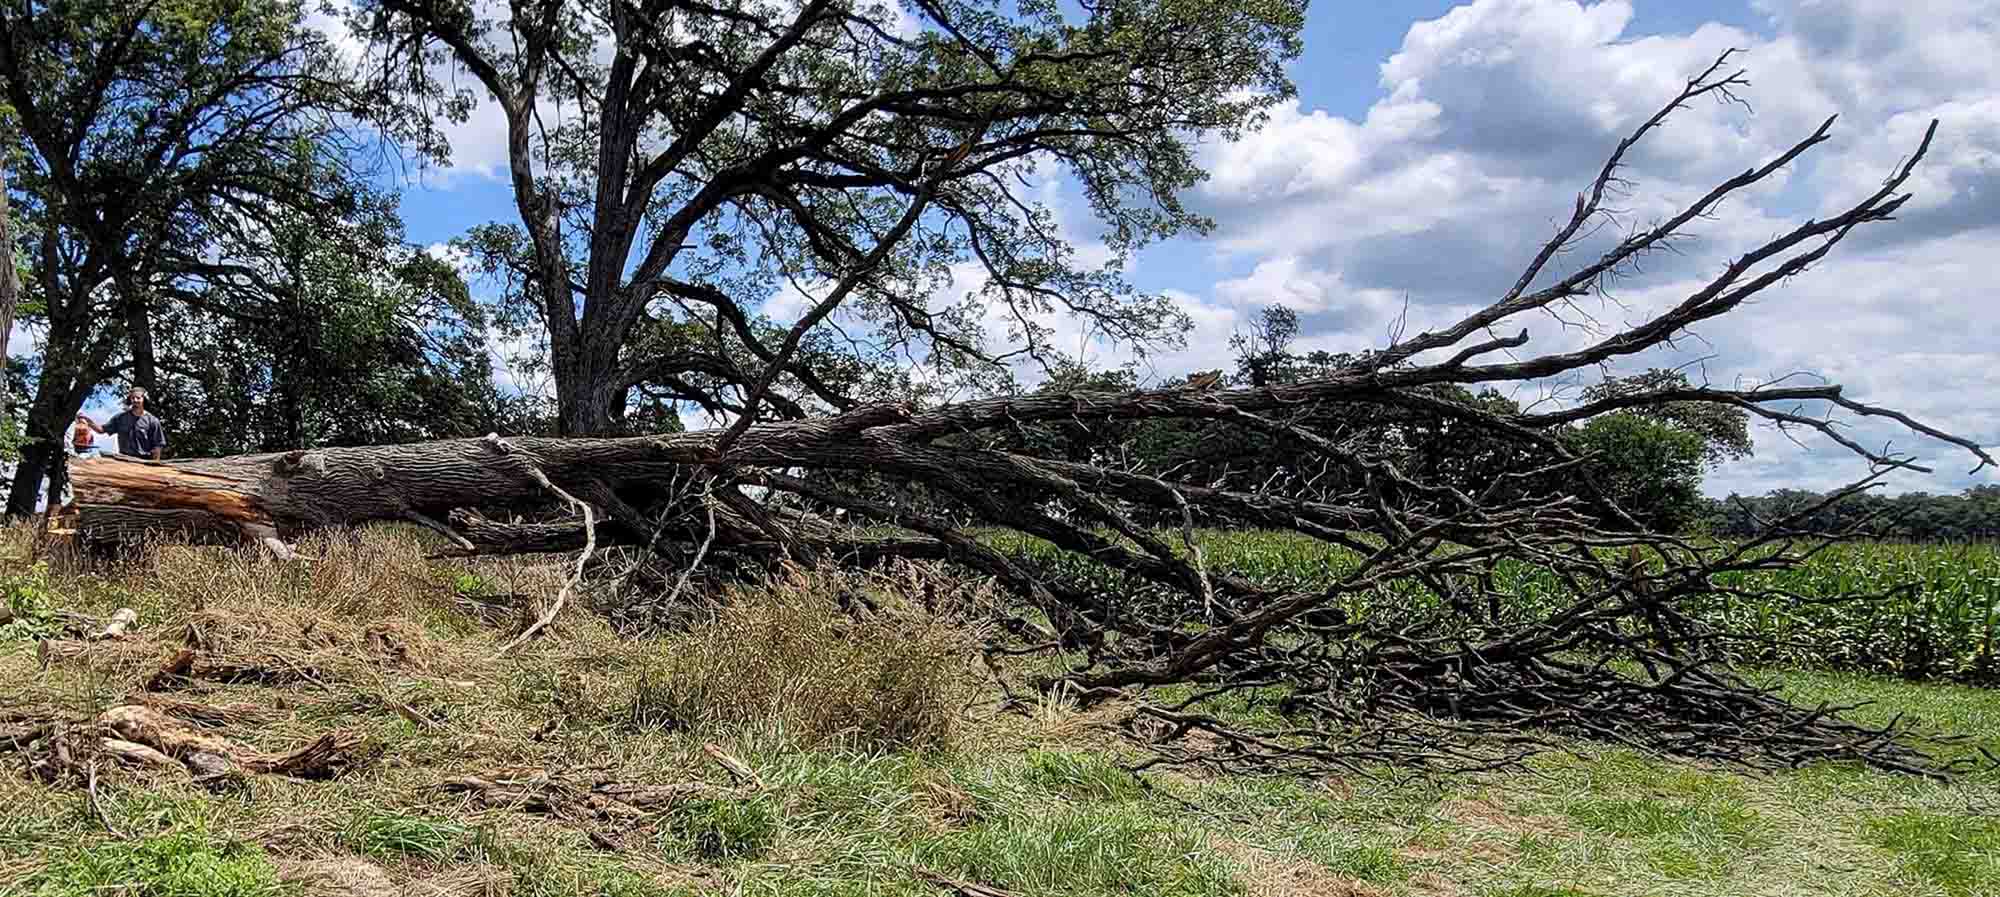 tree felling in Winnebago | Winnebago County, IL